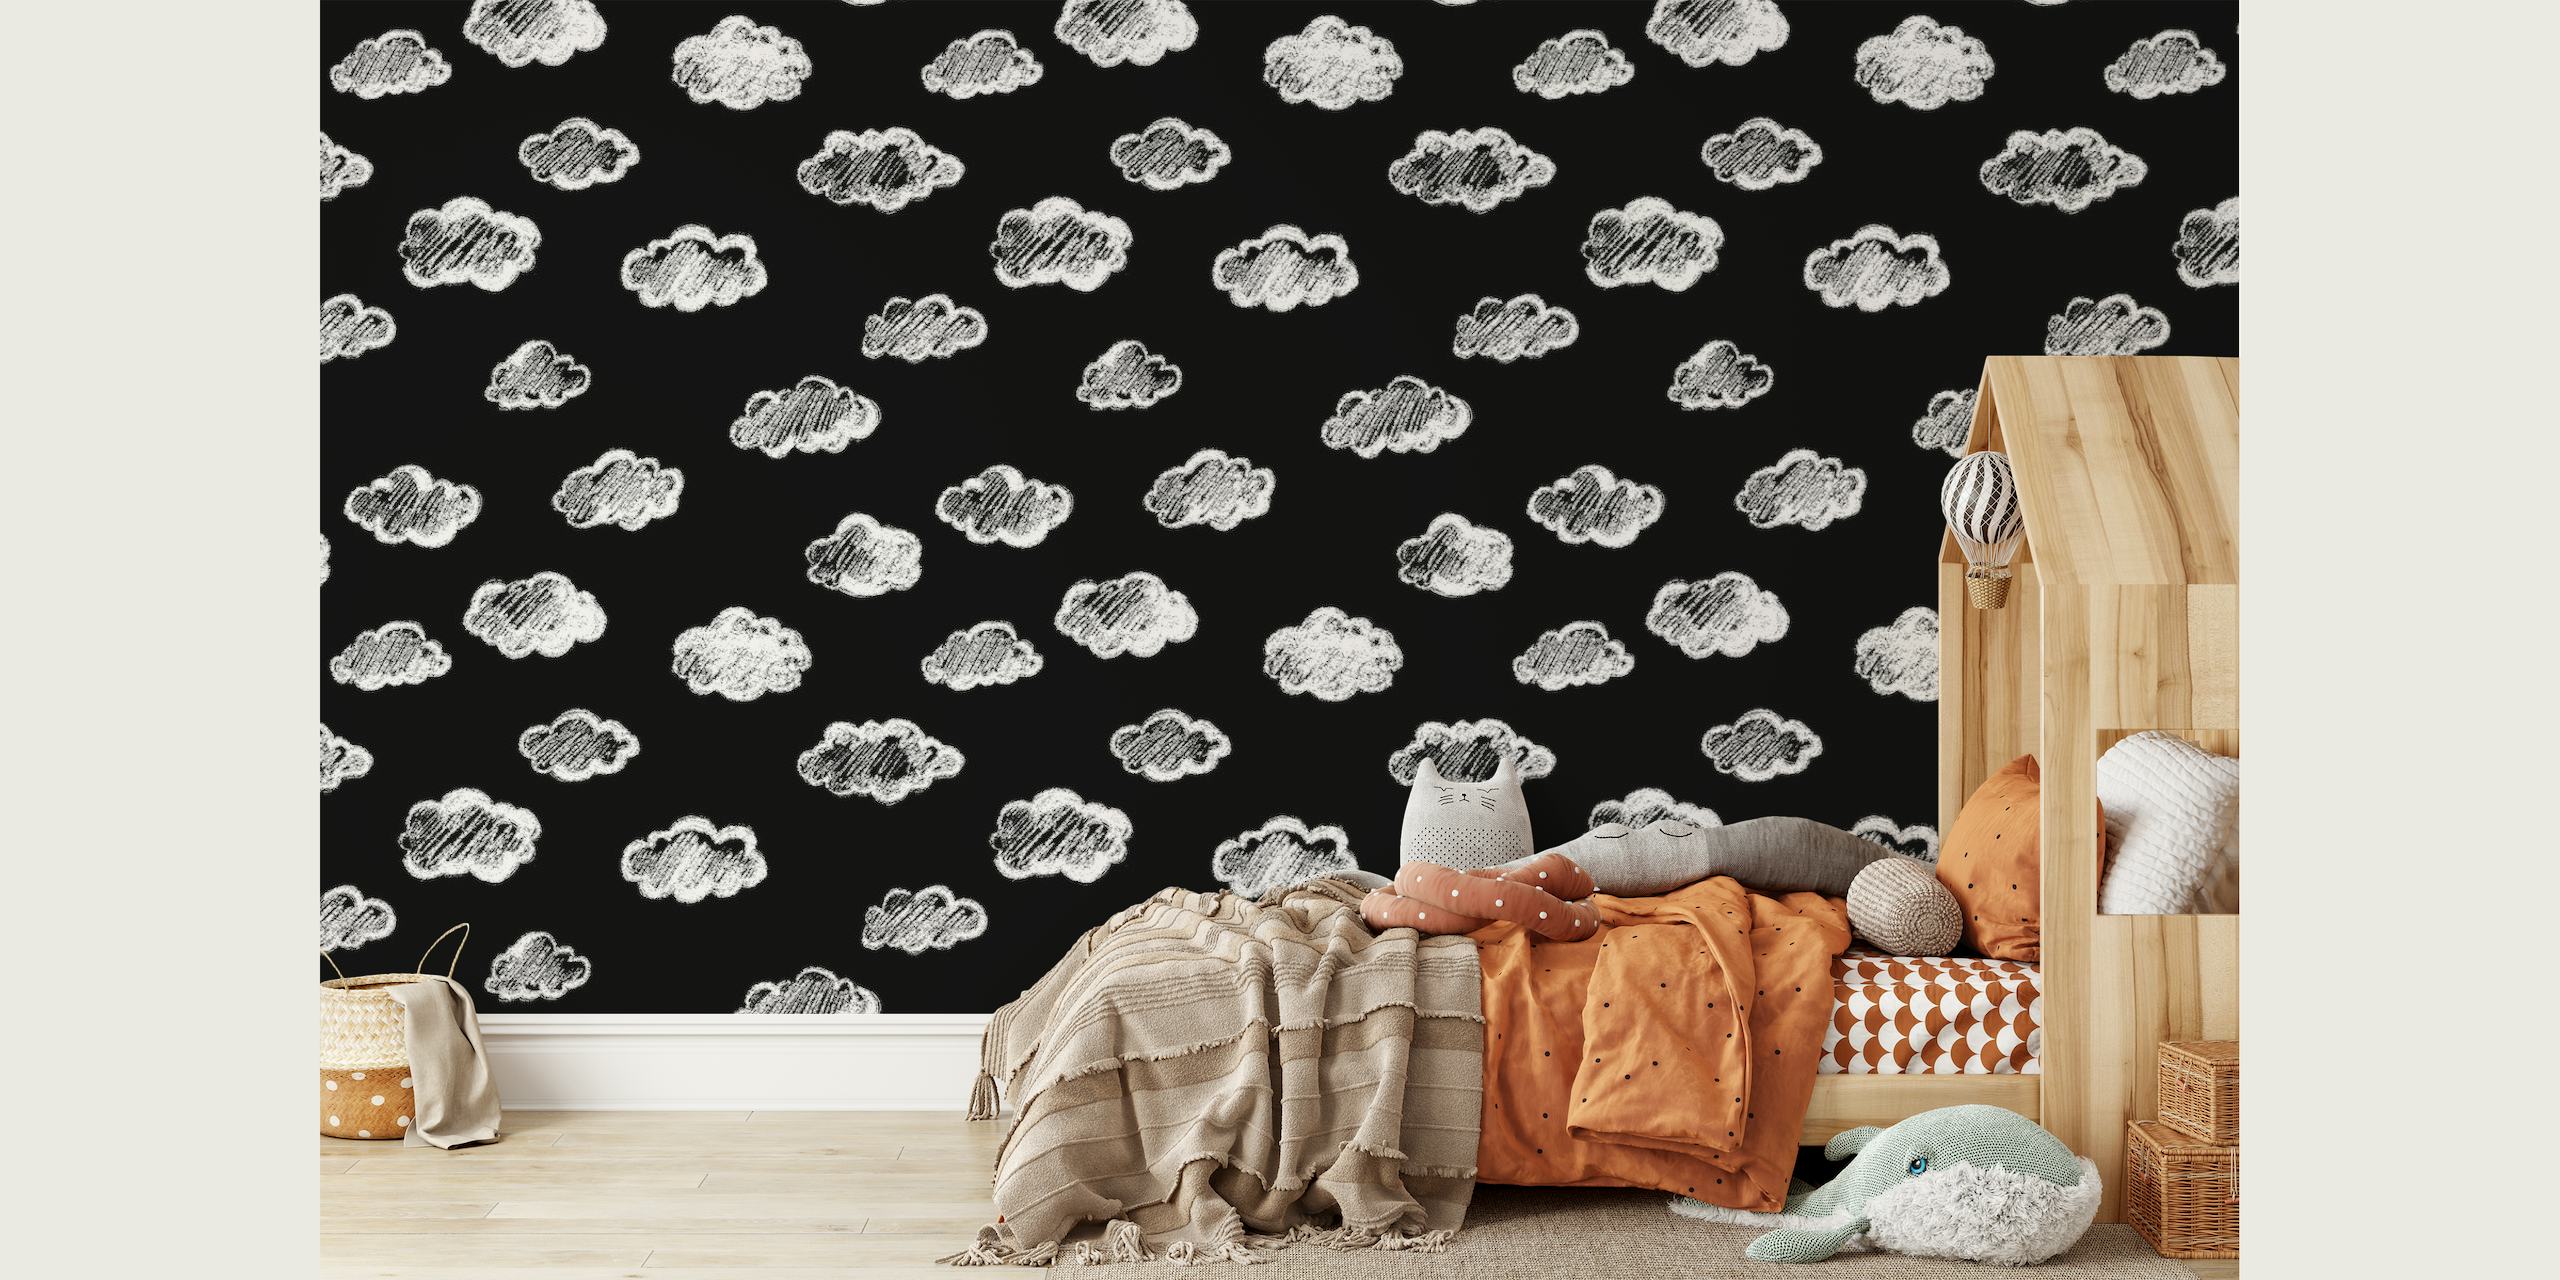 Papier peint mural noir artistique avec des motifs de nuages de craie blanche de happywall.com